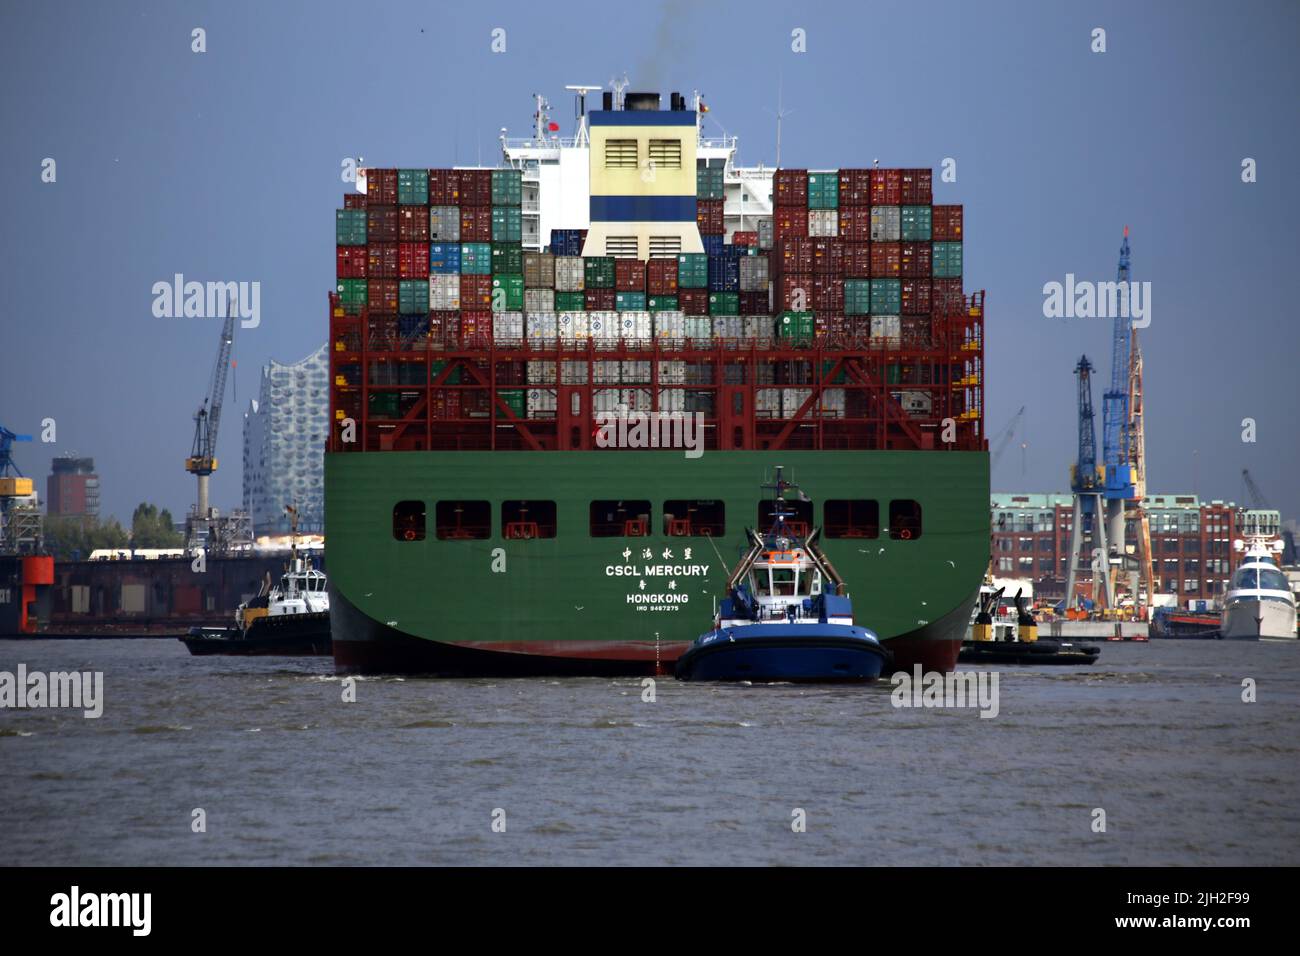 Container Frachter CSCL Mercury (Hongkong) Es wurde 2011 gebaut und kann bei einem Tiefgang von 15,5m bis zu 15000 Standard-Container tragen. Standard-Container sind 20 Fuß lang, die größeren sind 40Fuß lang. Stock Photo